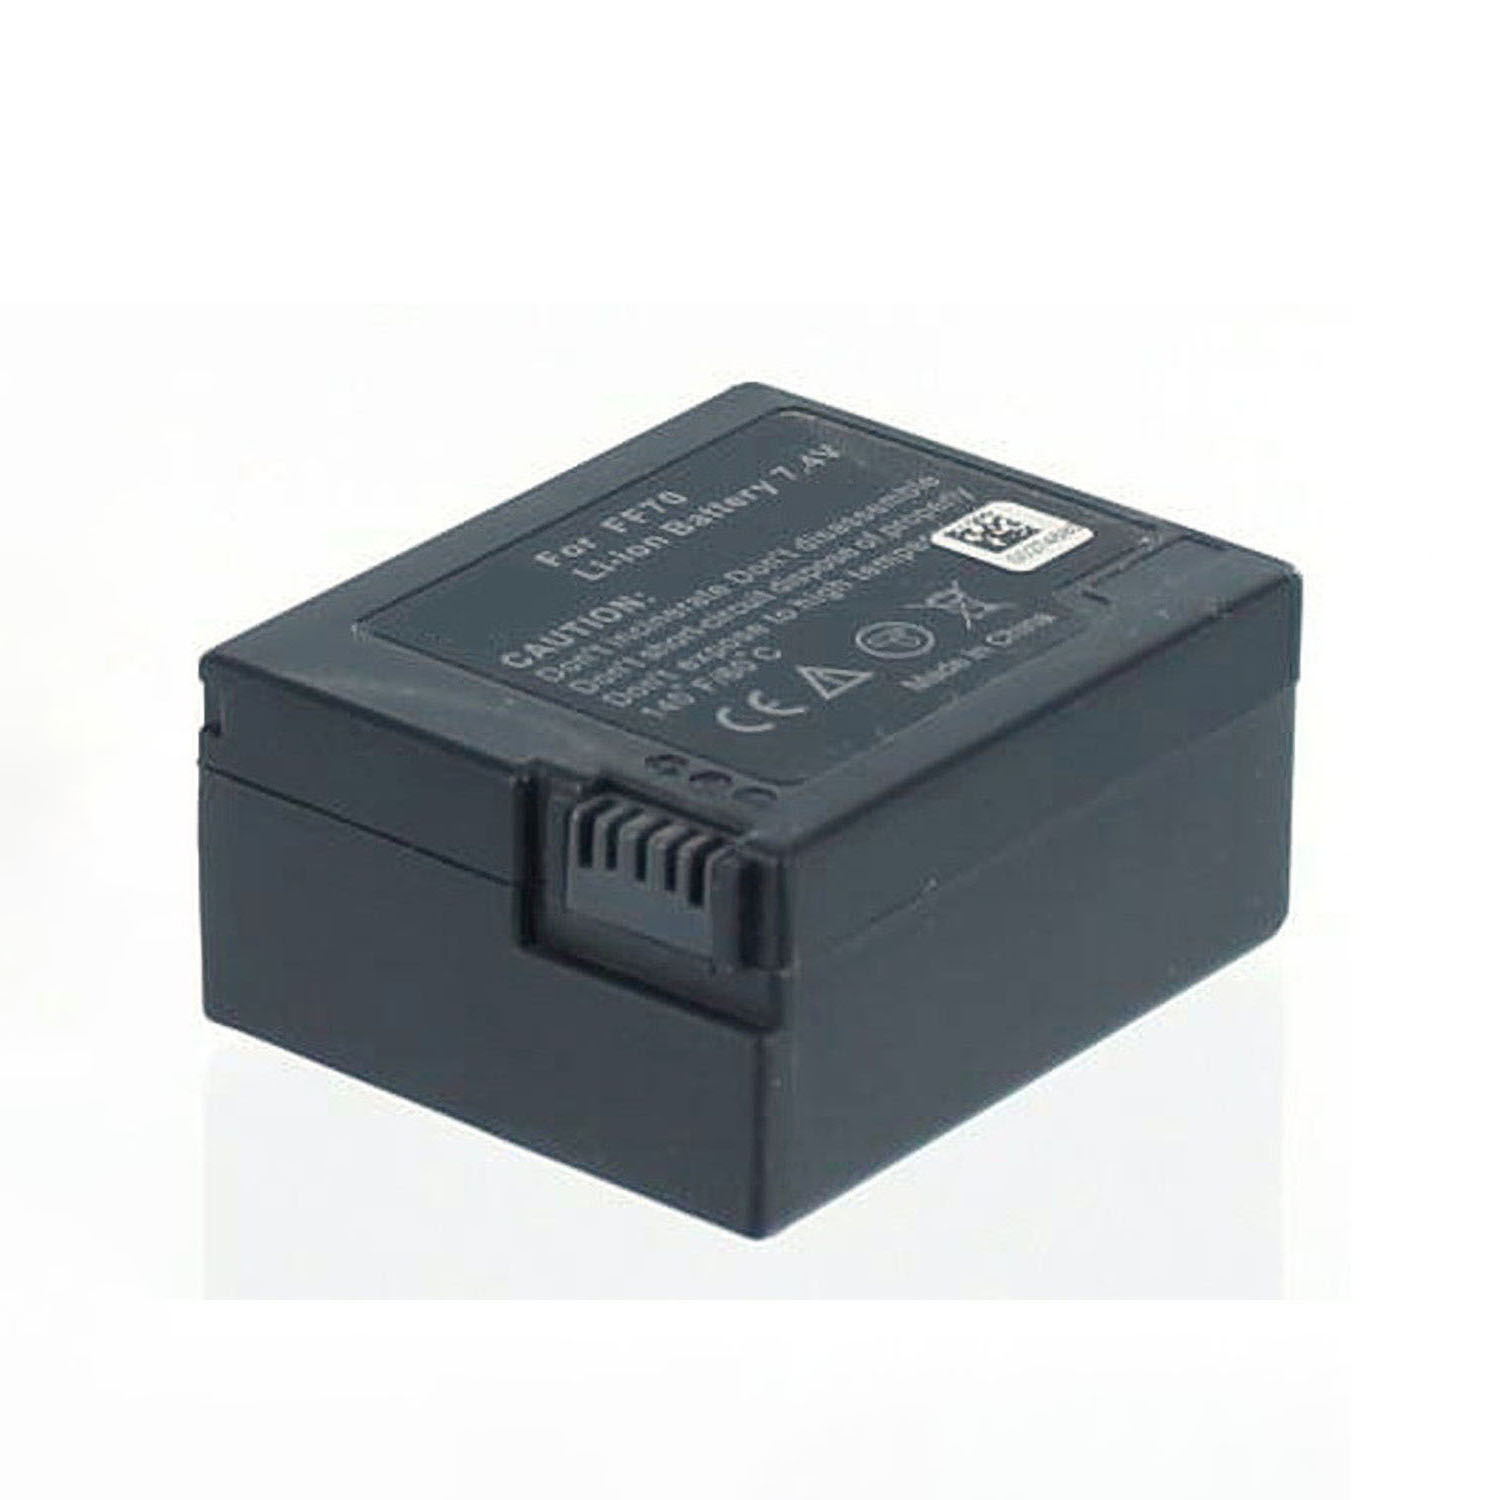 AGI Akku kompatibel mit DCR-PC109 1300 Li-Ion mAh Camcorderakku, Li-Ion, Volt, 7.2 Sony